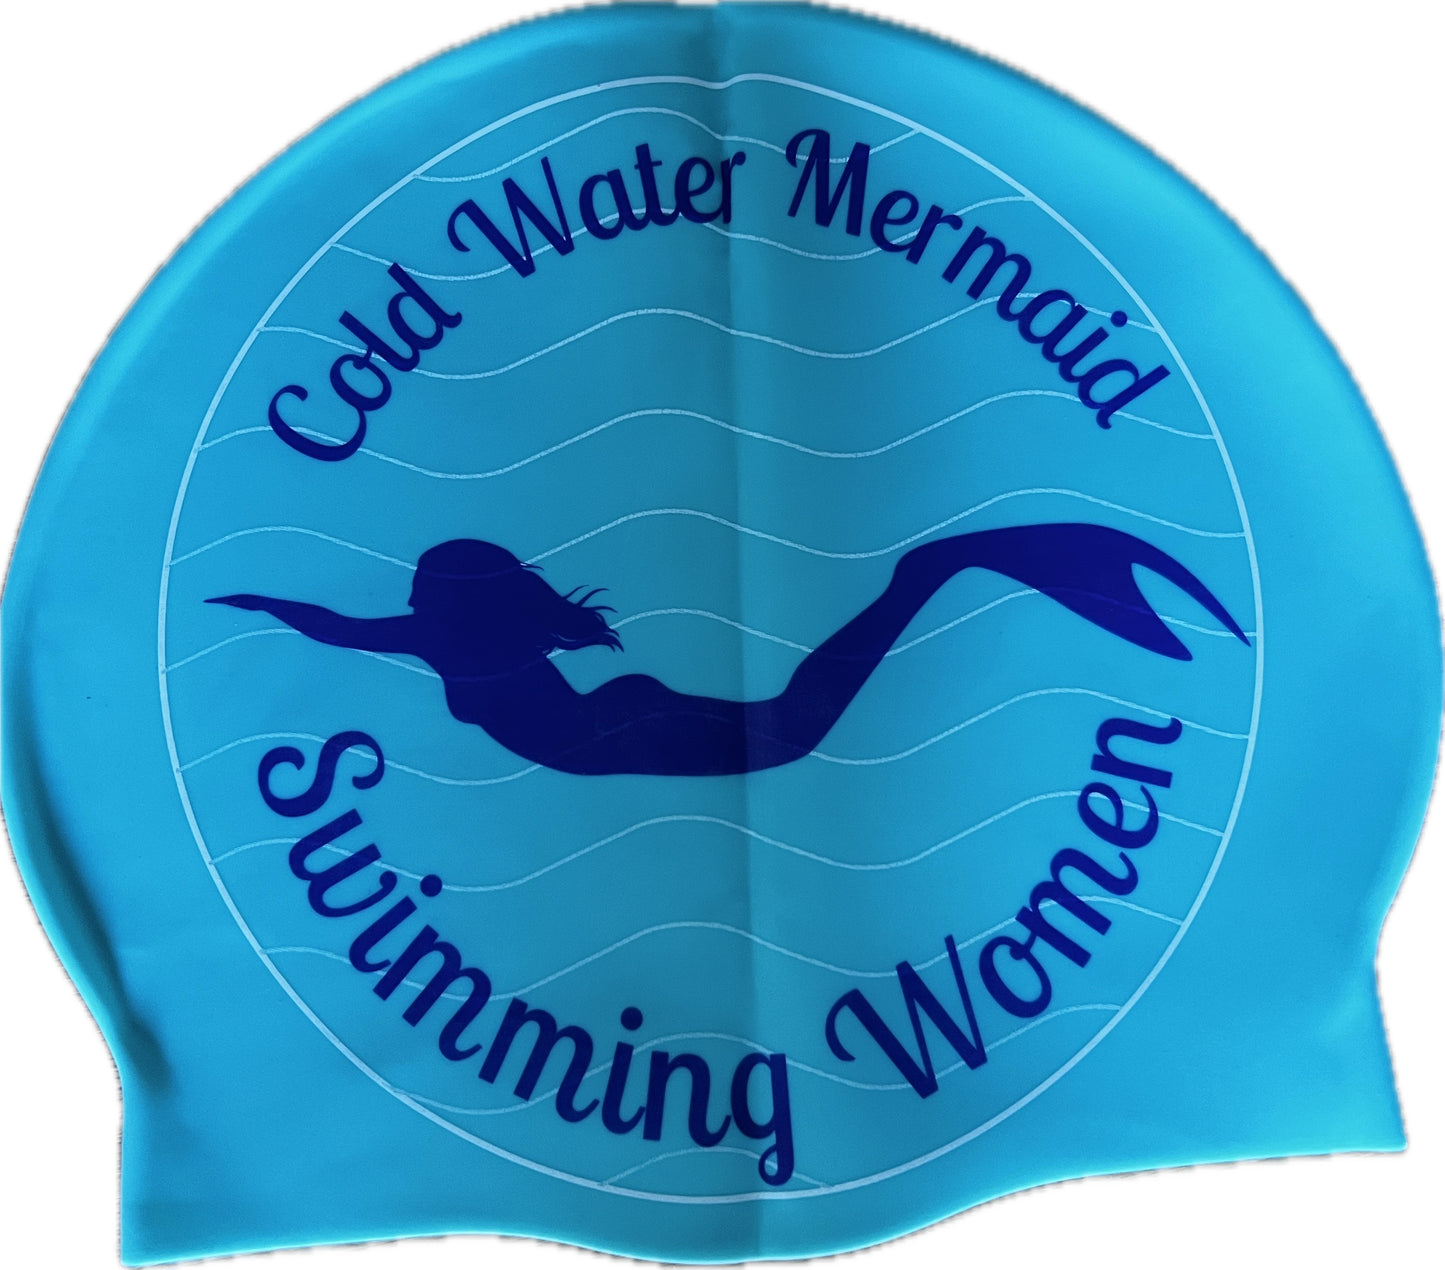 Swim cap - COLD WATER MERMAID